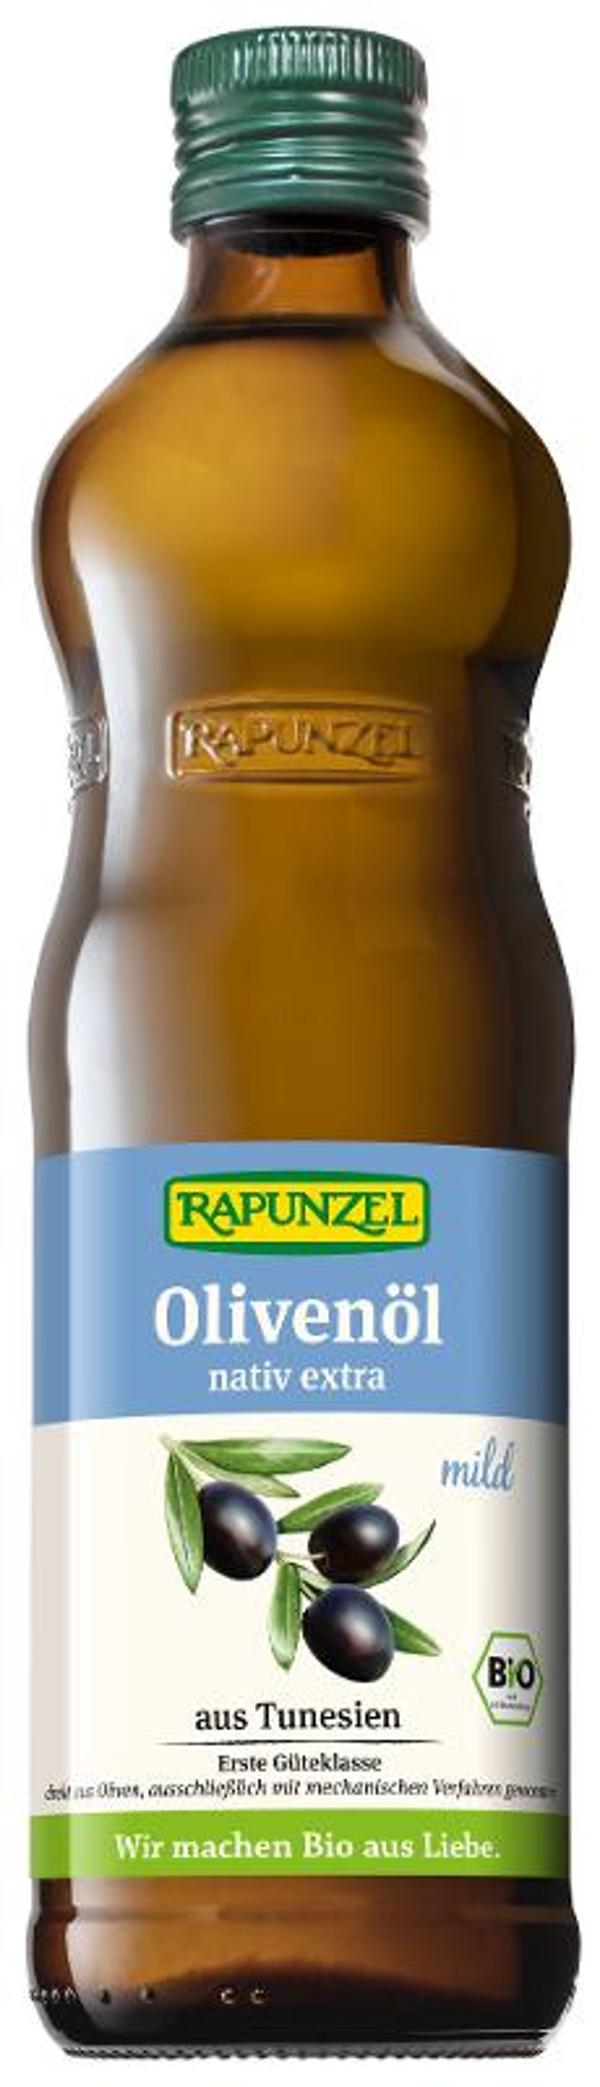 Produktfoto zu Olivenöl mild, nativ extra 0,5